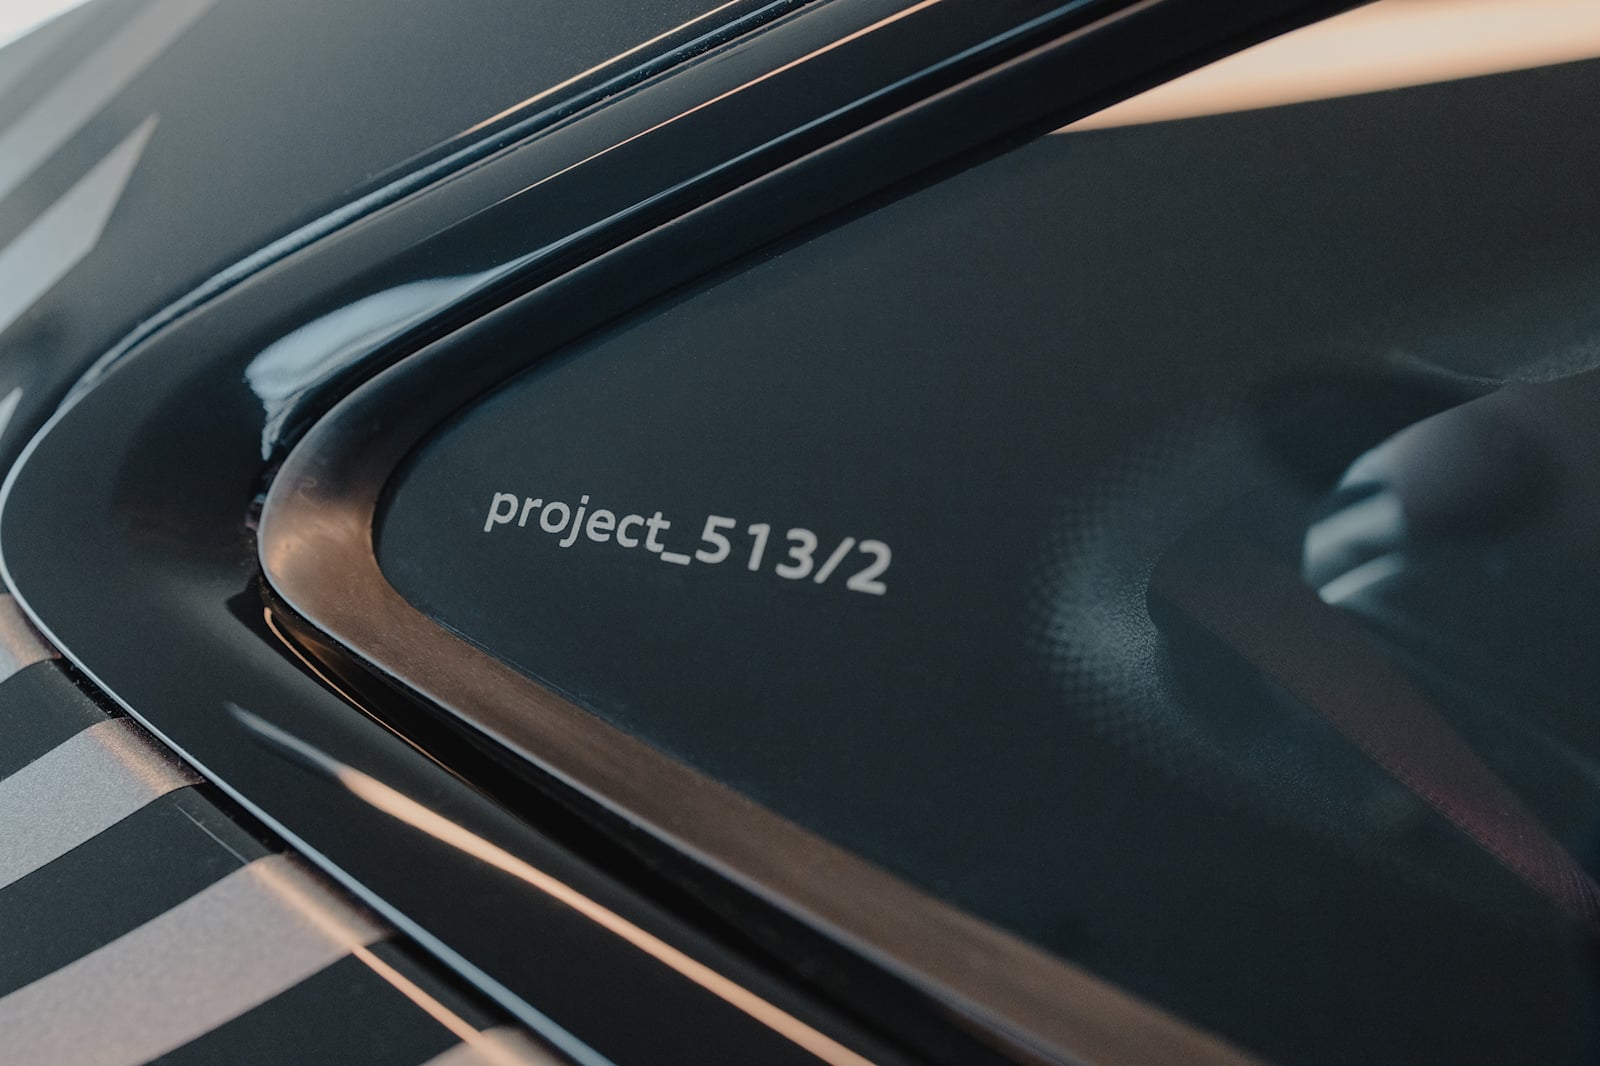 اودي Project_513/2 تنطلق رسمياً كواحدة من أقوى سيارات الدفع الخلفي بالعالم 46